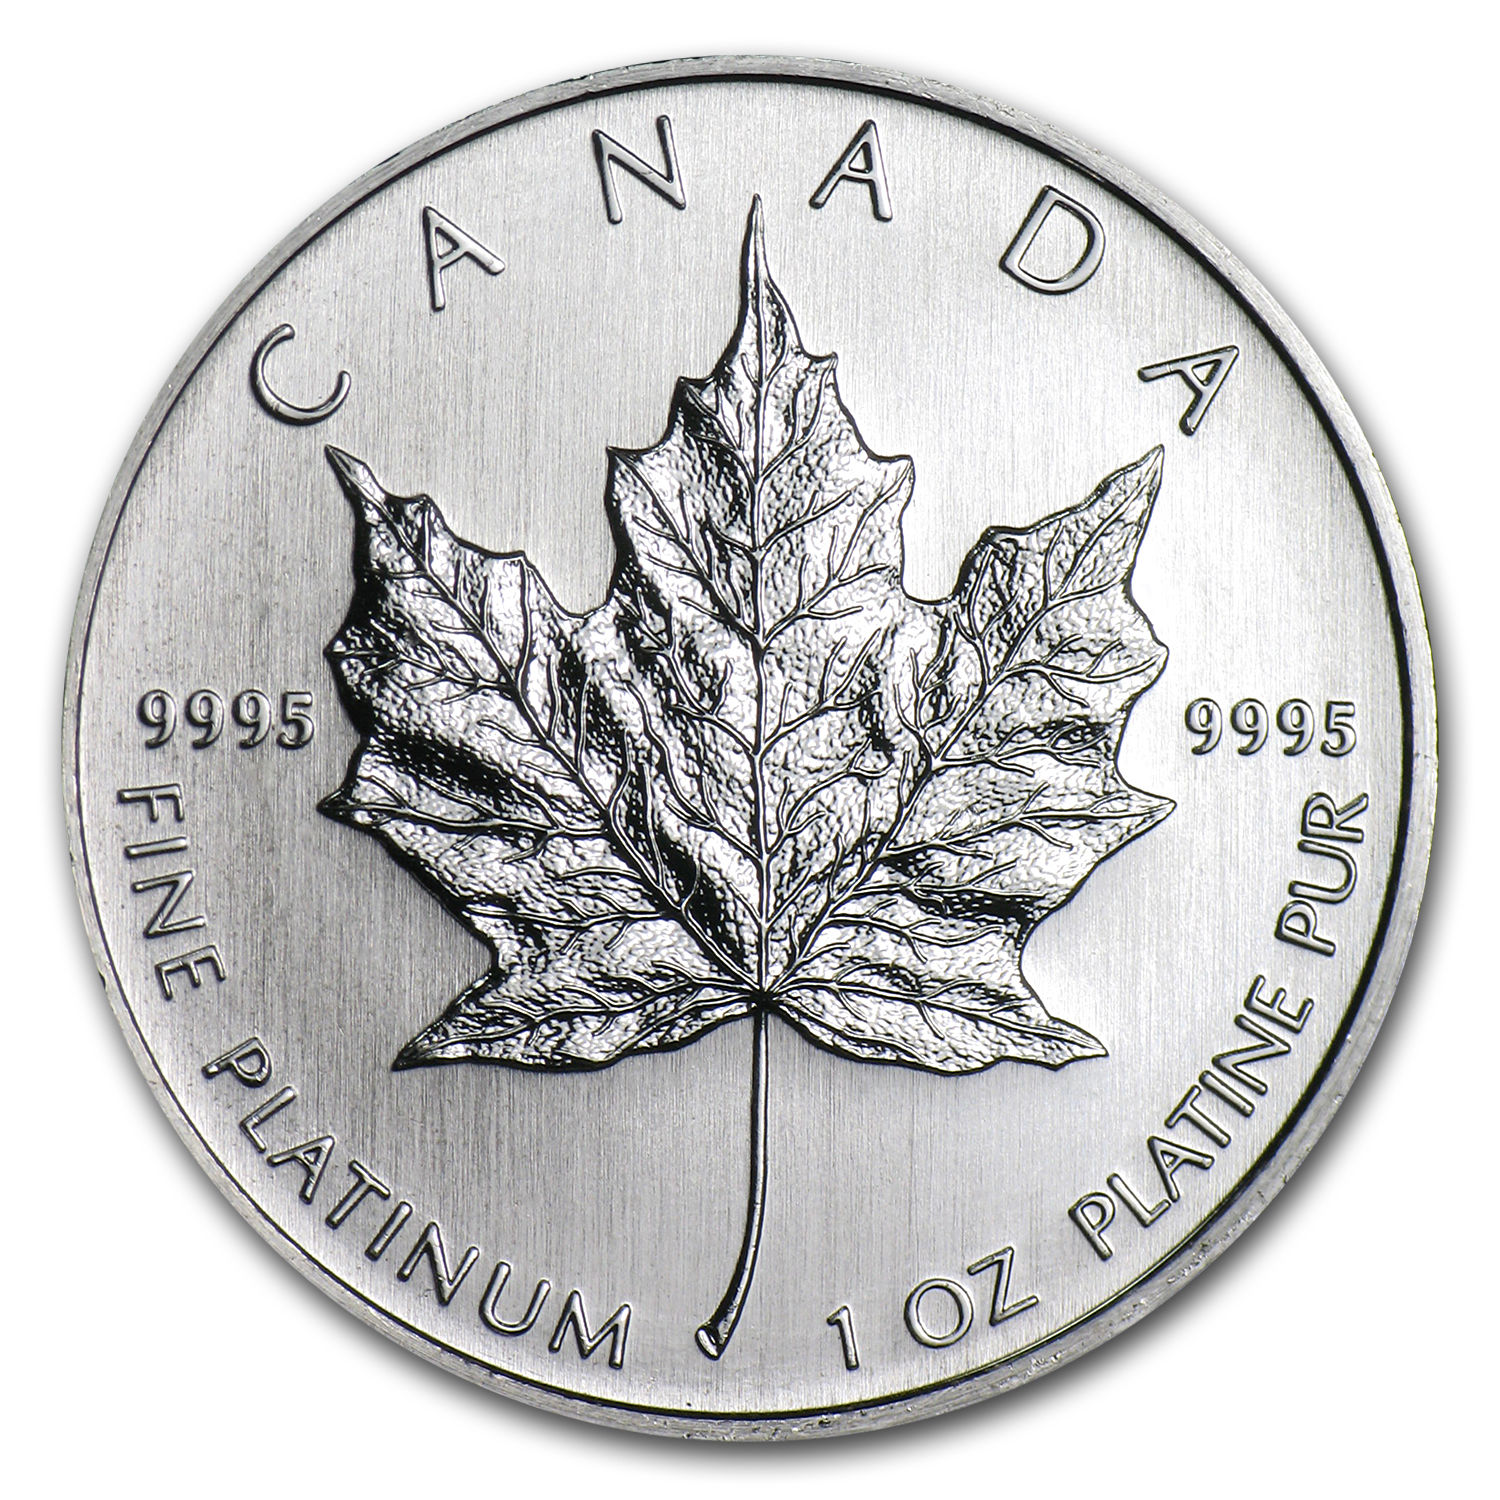 Canada 1 oz Platinum Maple Leaf BU (Random Year) - SKU #60